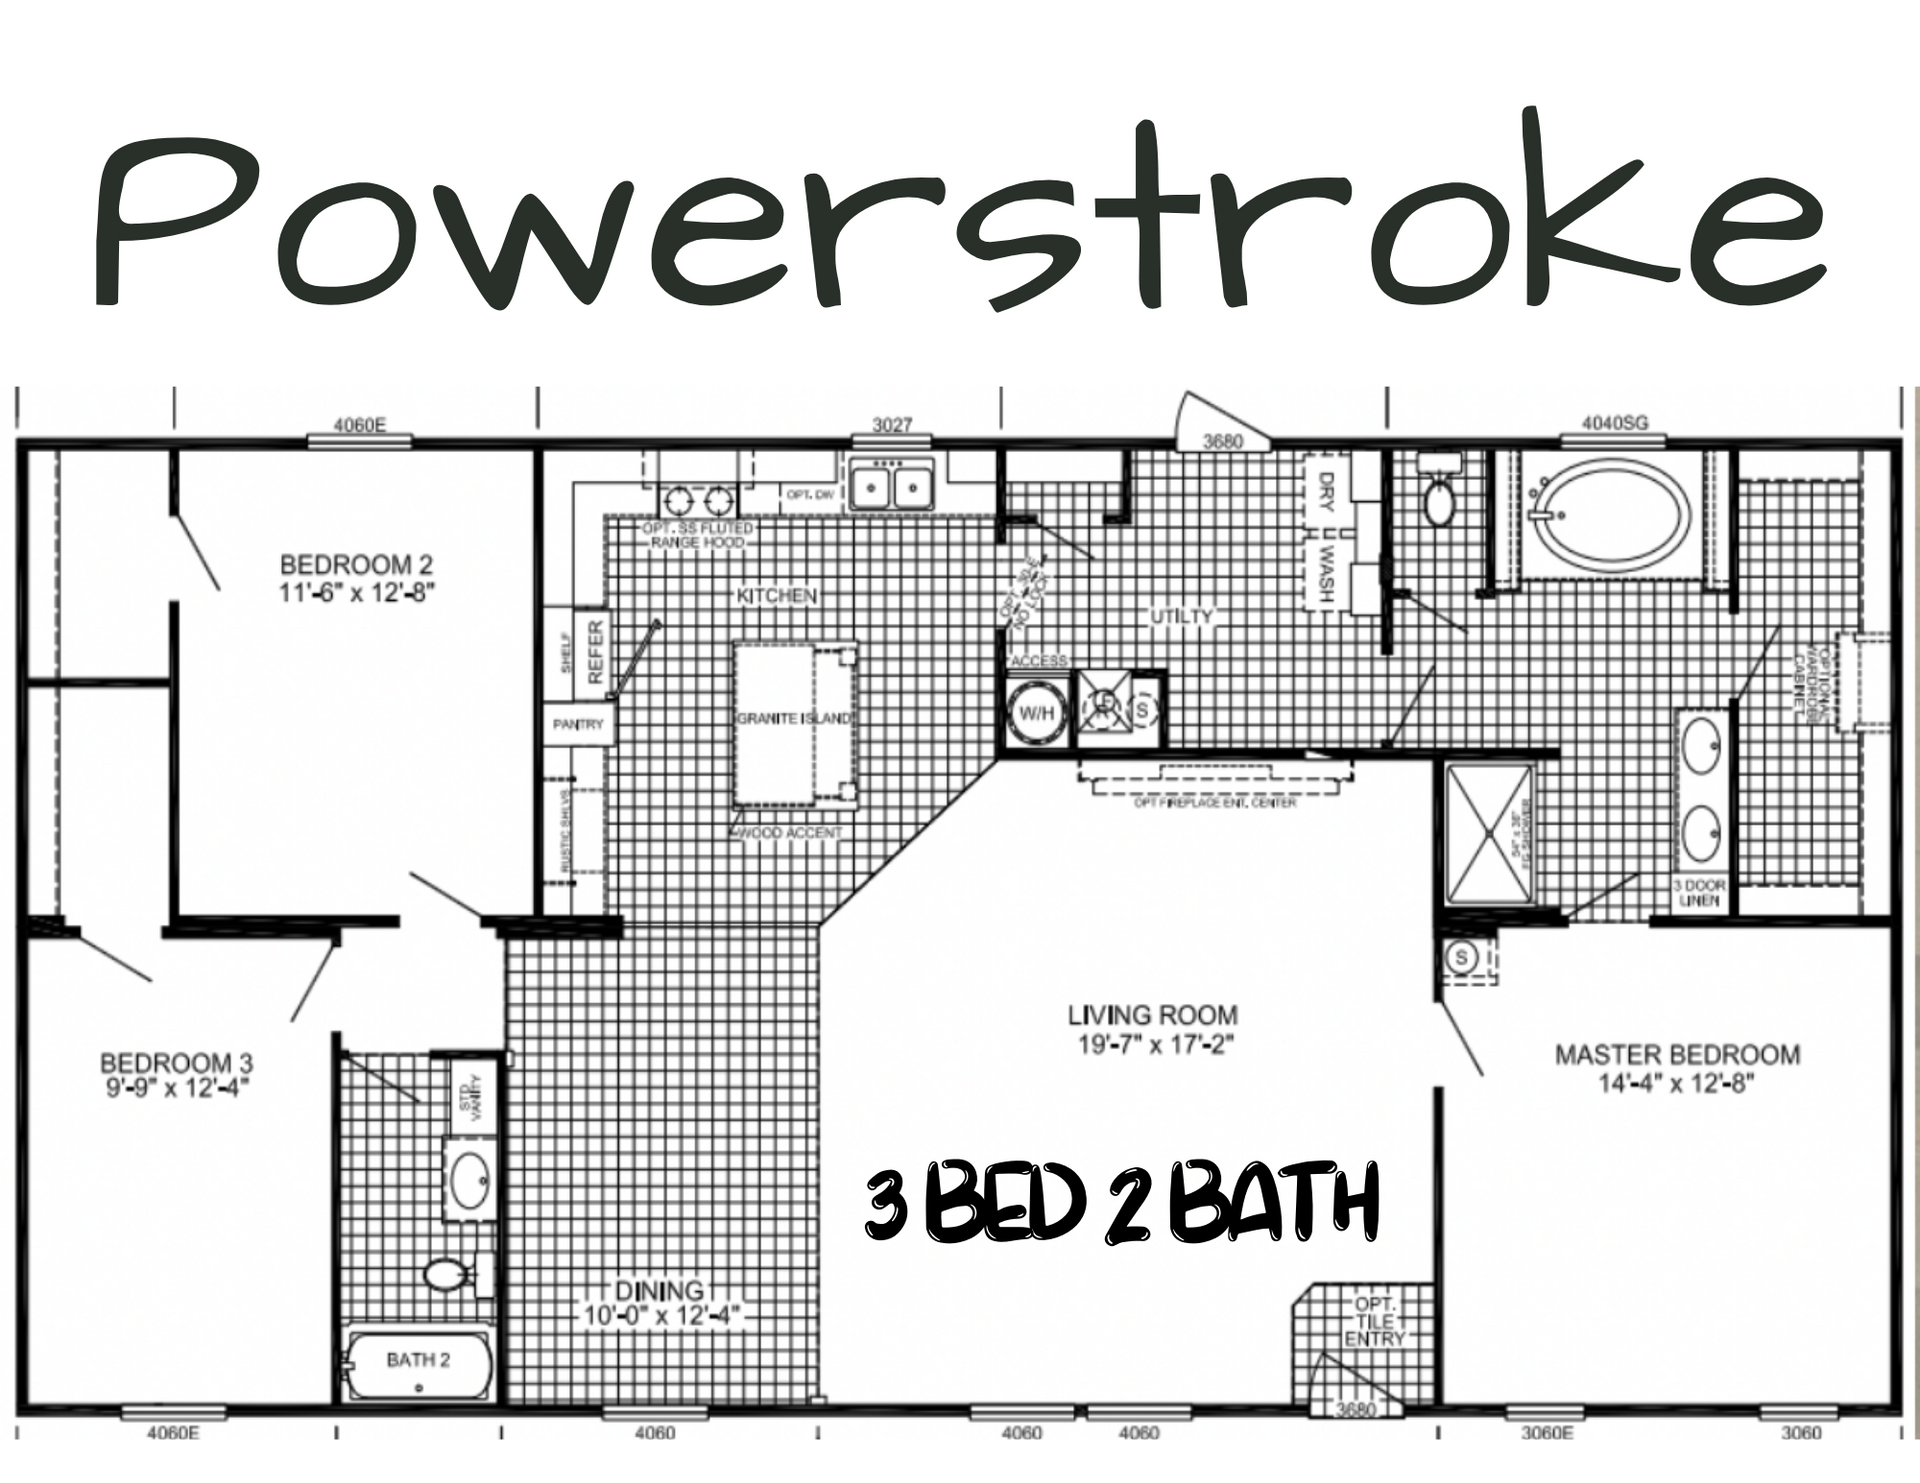 Powerstroke Floor Plan